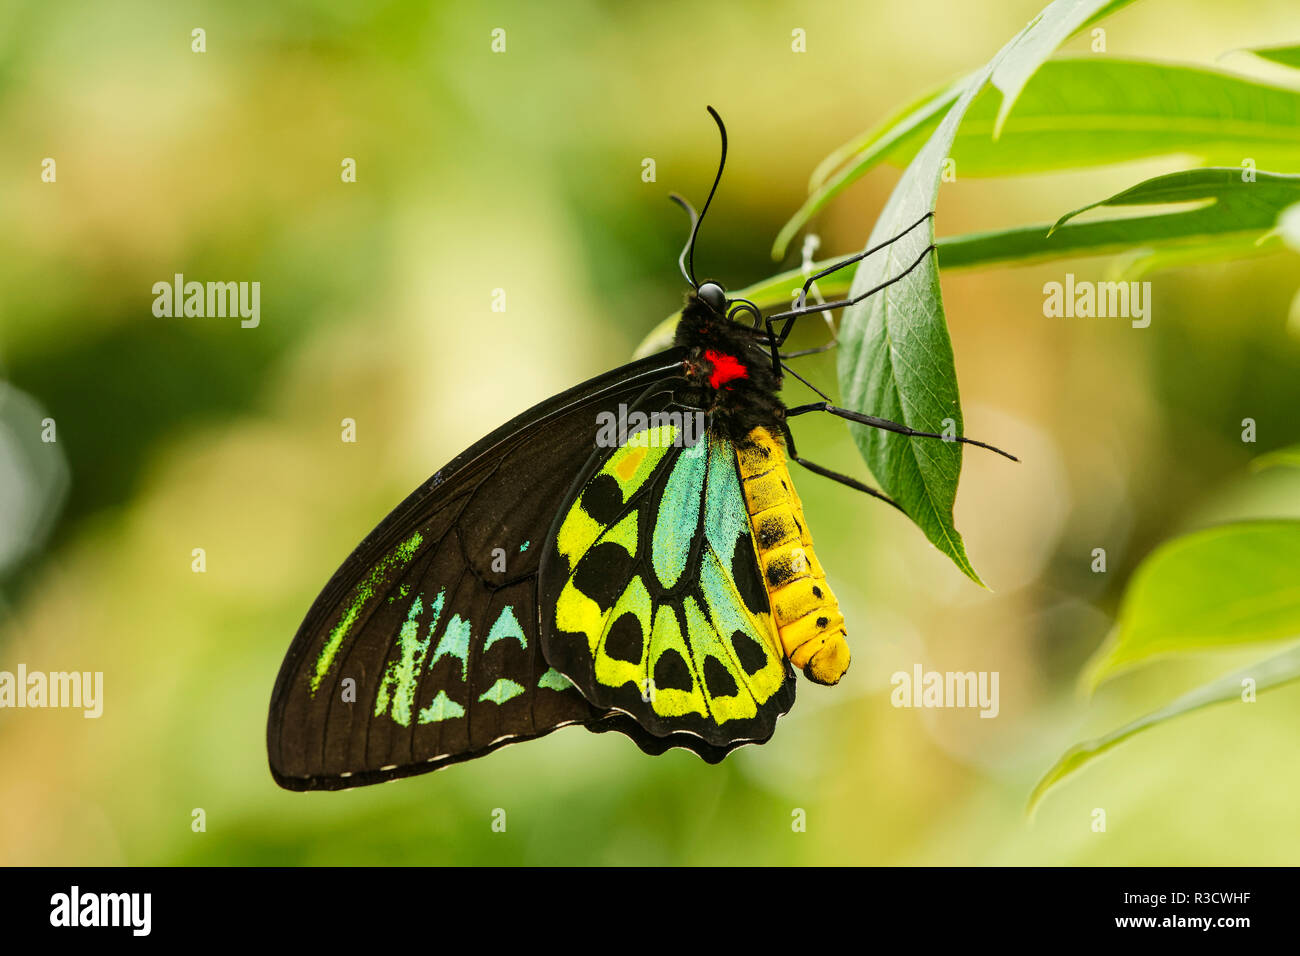 Green Birdwing butterfly, Ornithoptera priamus, Missouri Botanical Gardens, Missouri Stock Photo